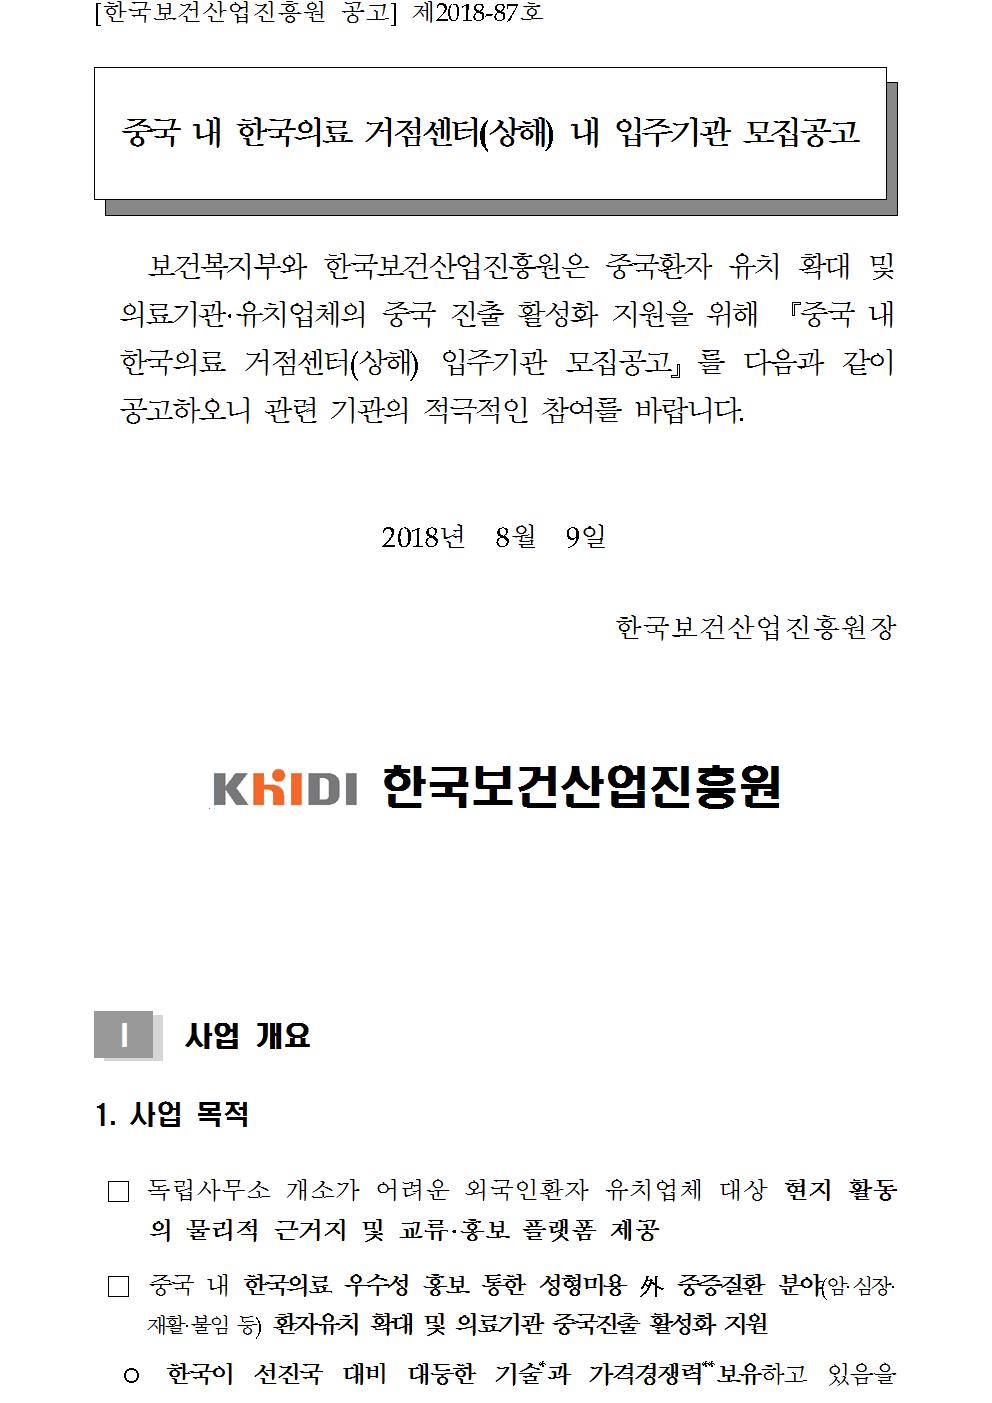 중국 내 한국의료 거점센터(상해) 내 입주기관 모집공고